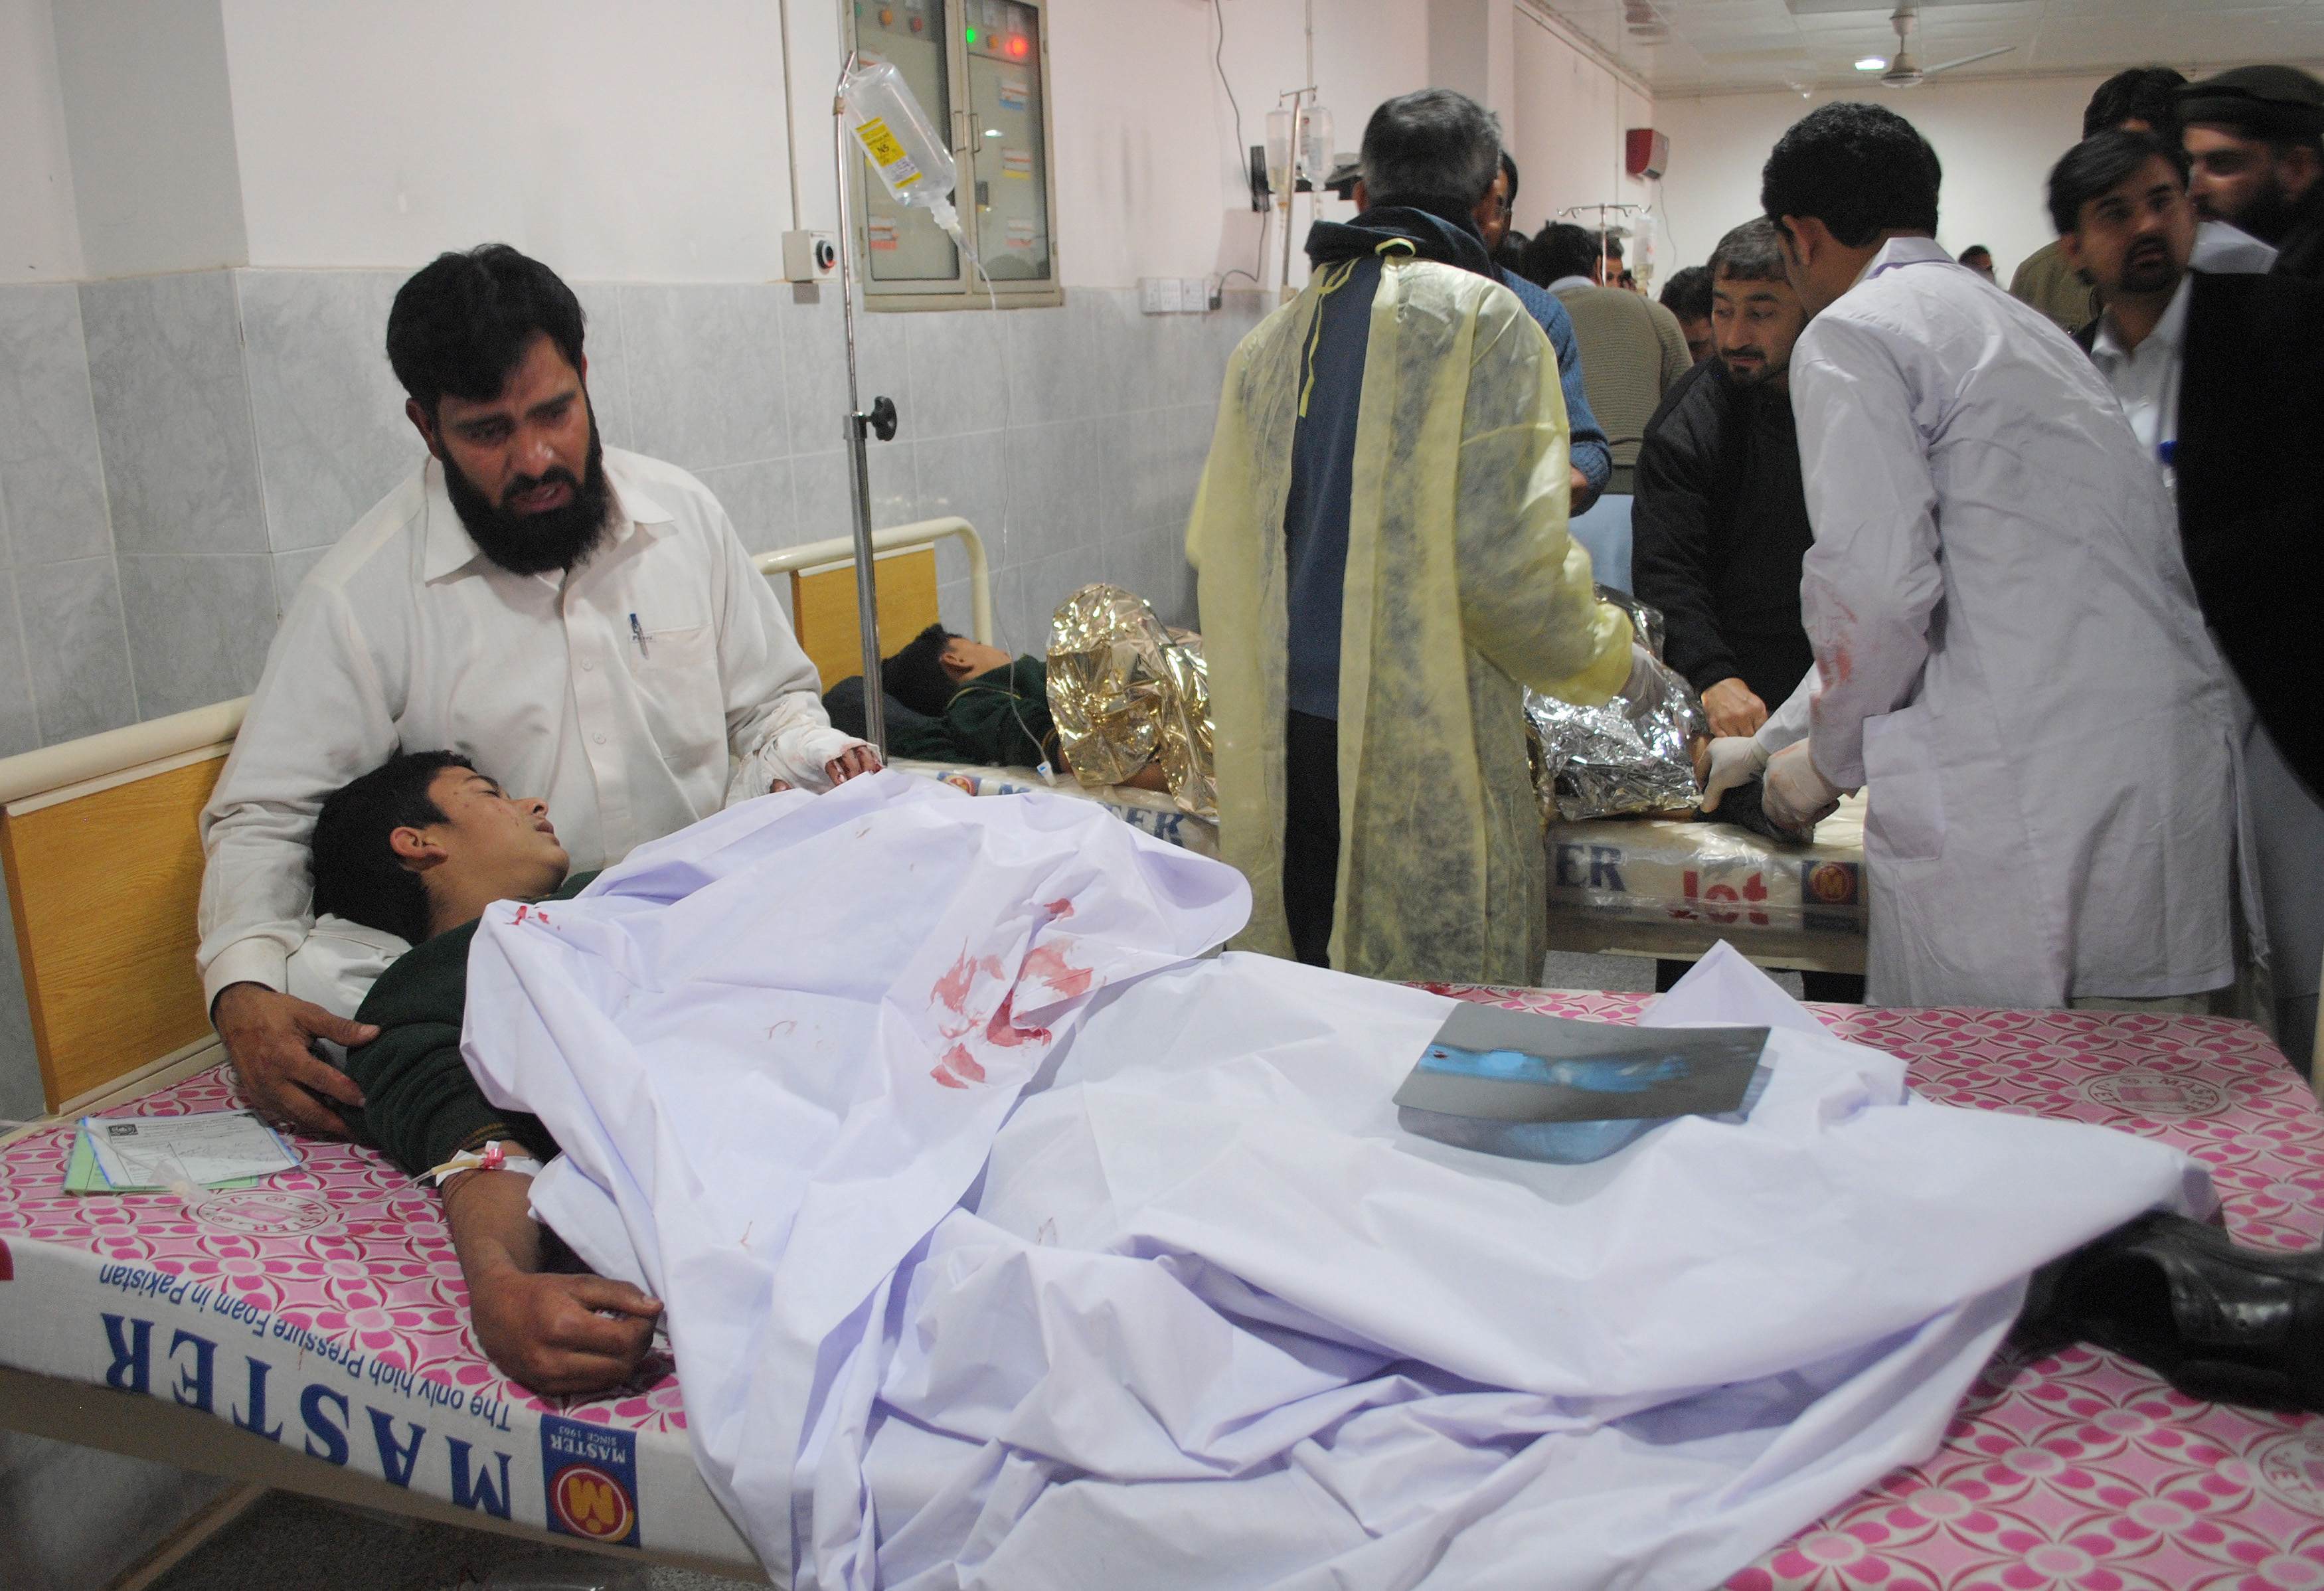 Αθώα παιδιά θυσία στο βωμό των Ταλιμπάν – 131 νεκροί σε στρατιωτικό σχολείο του Πακιστάν – Βομβιστής αυτοκτονίας ανατινάχθηκε σε τάξη με 60 μαθητές